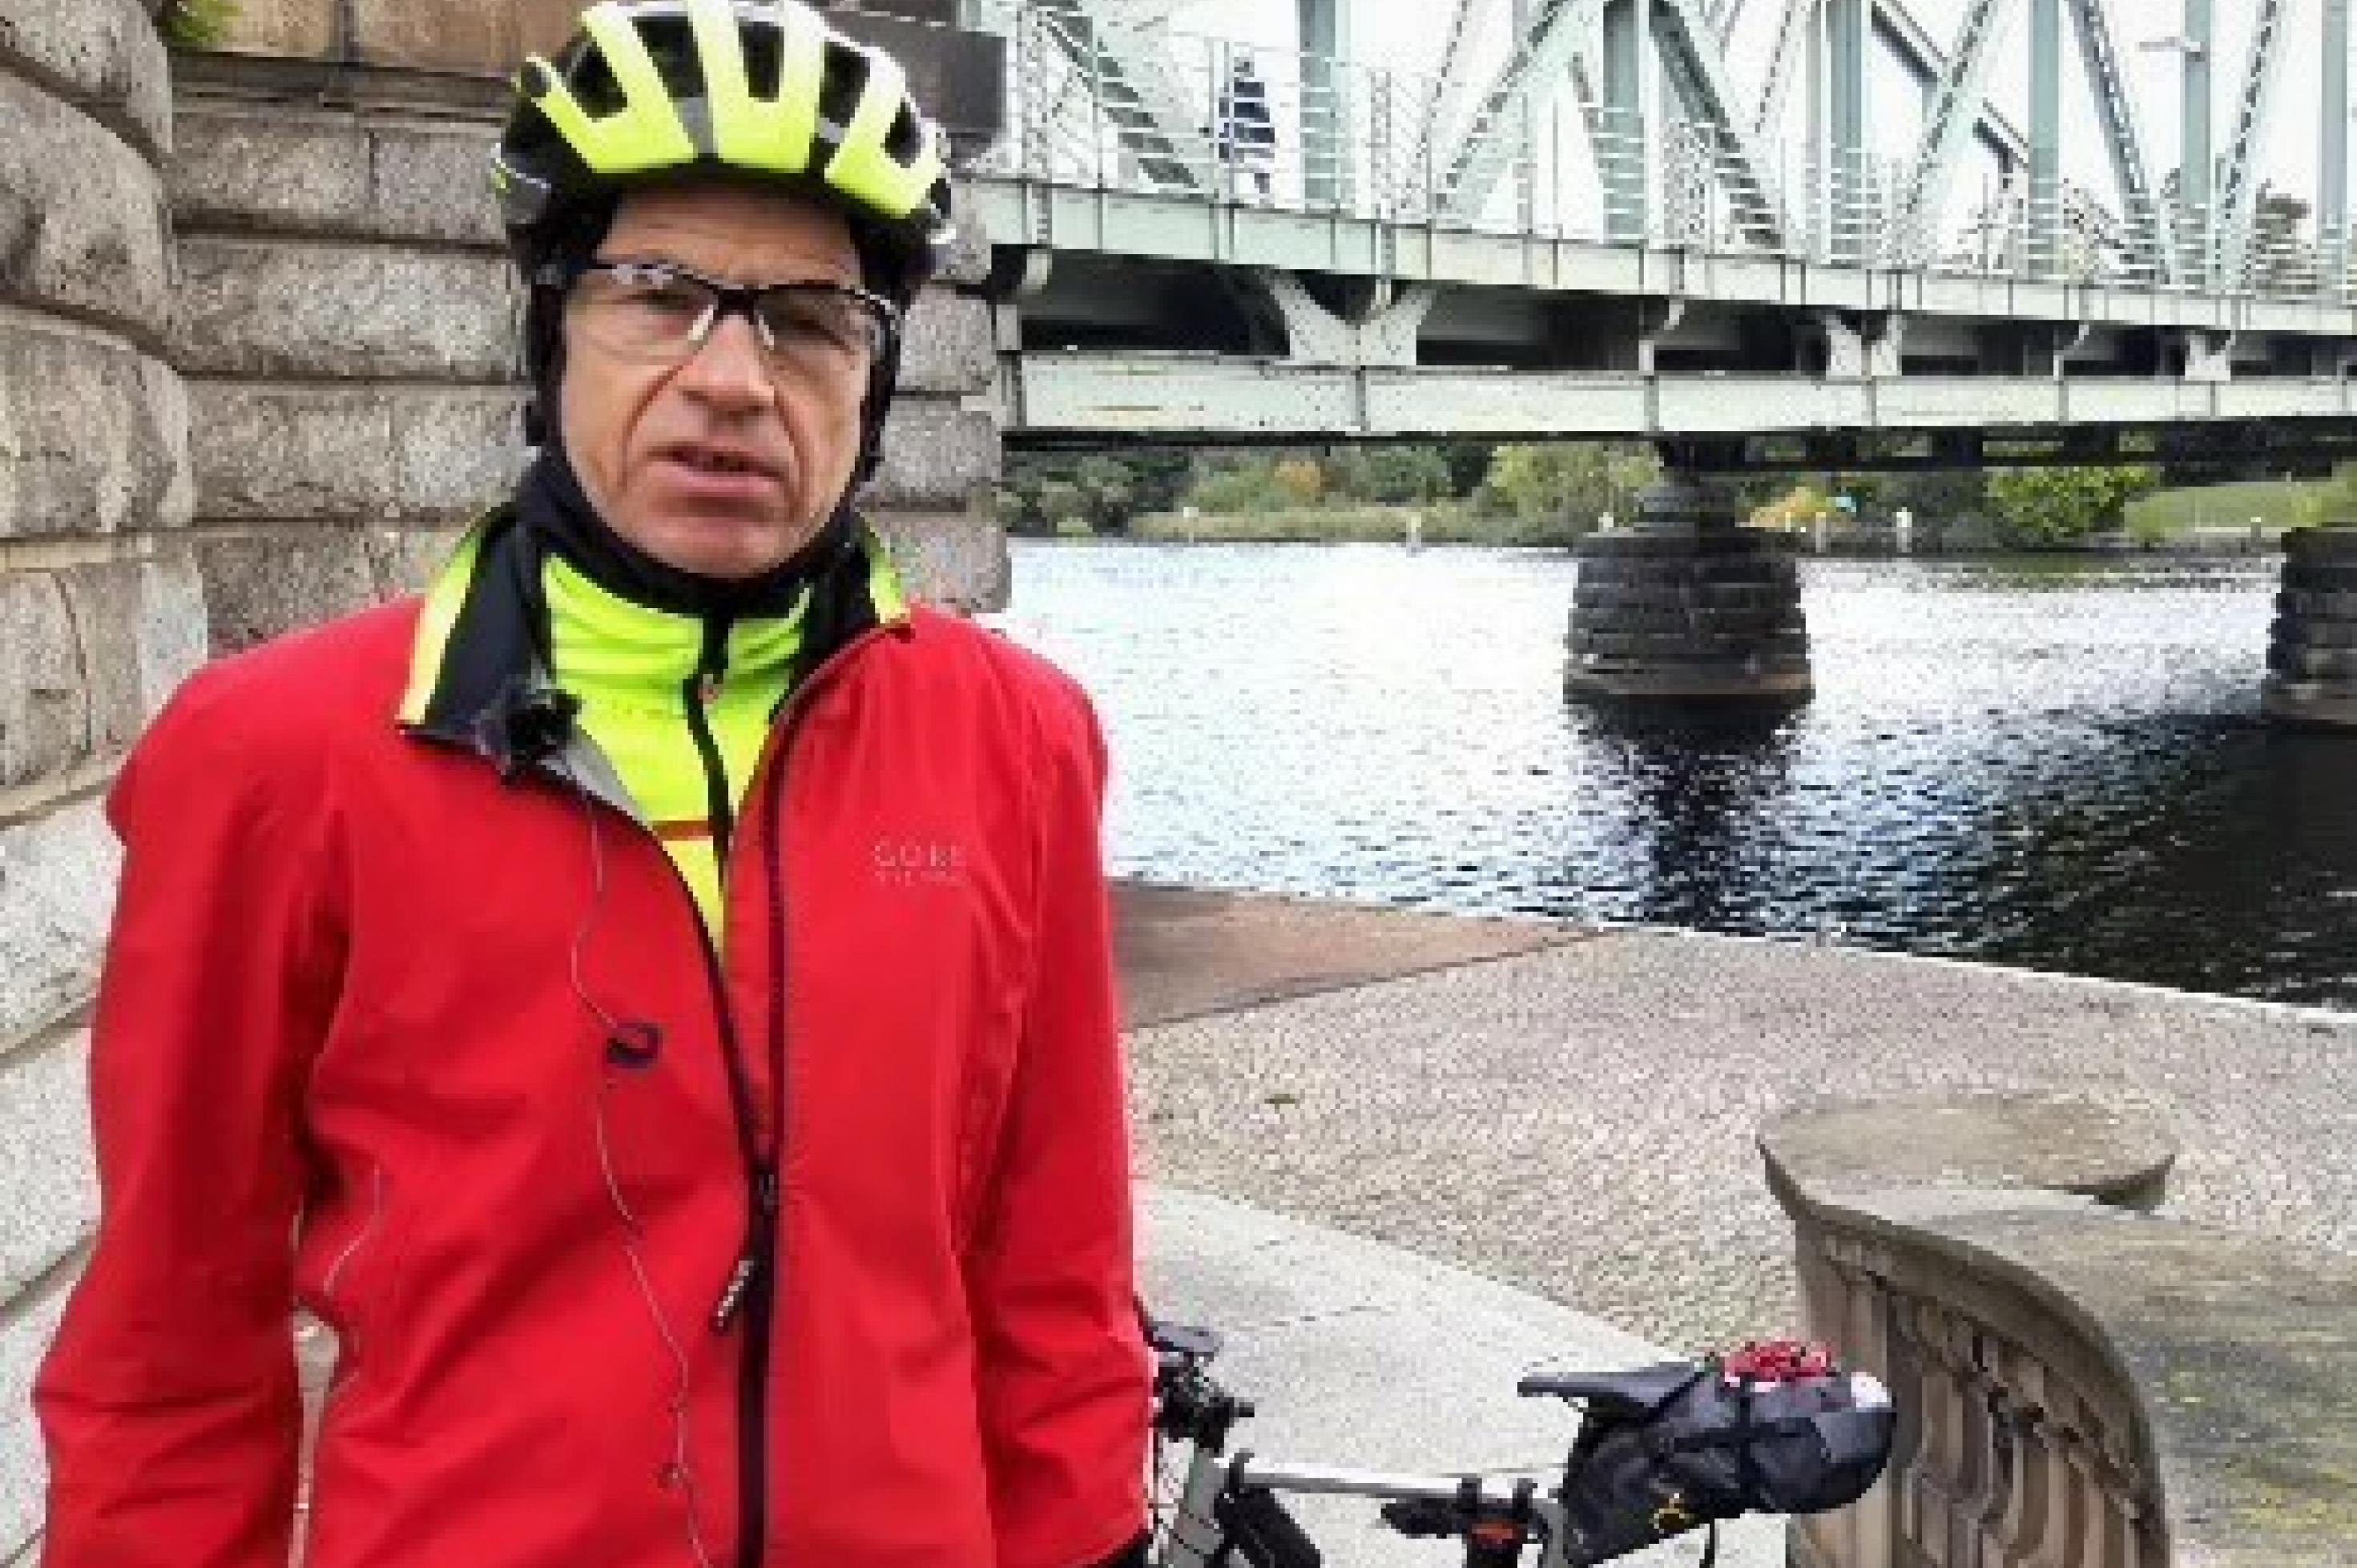 Im Vordergrund der Reporter in Radmontur und mit Radhelm, im Hintergrund sein Rennrad vor der Brücke mit der Metallkonstruktion über dem dahin fließenden Wasser der Spree.